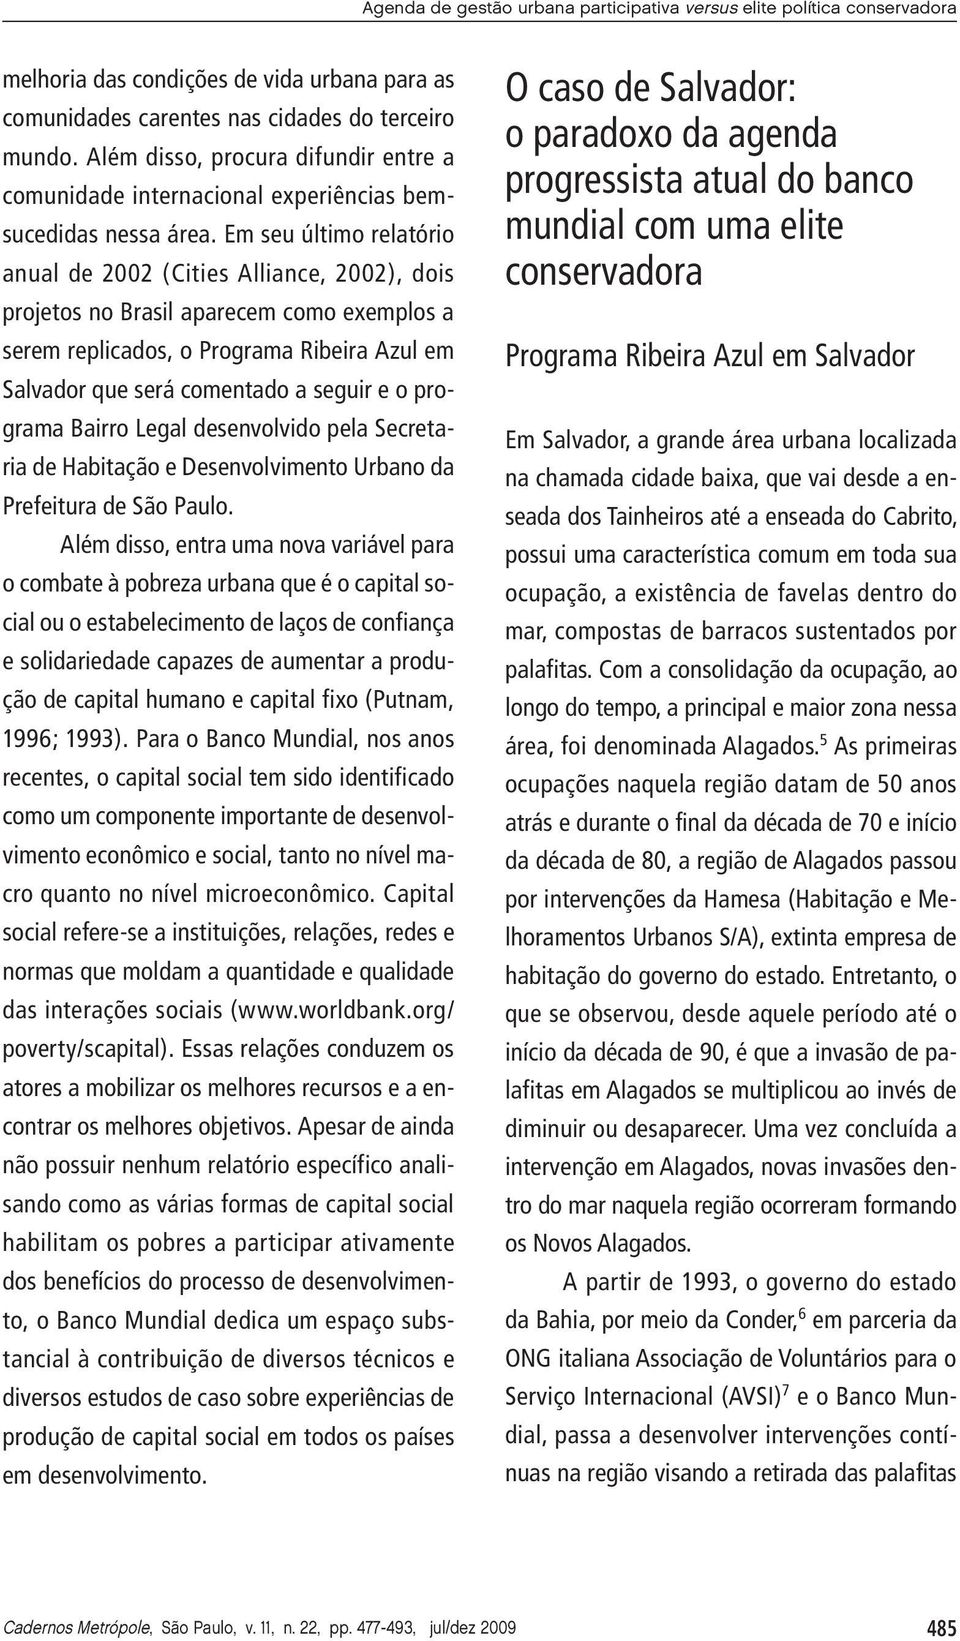 Em seu último relatório anual de 2002 (Cities Alliance, 2002), dois projetos no Brasil aparecem como exemplos a serem replicados, o Programa Ribeira Azul em Salvador que será comentado a seguir e o